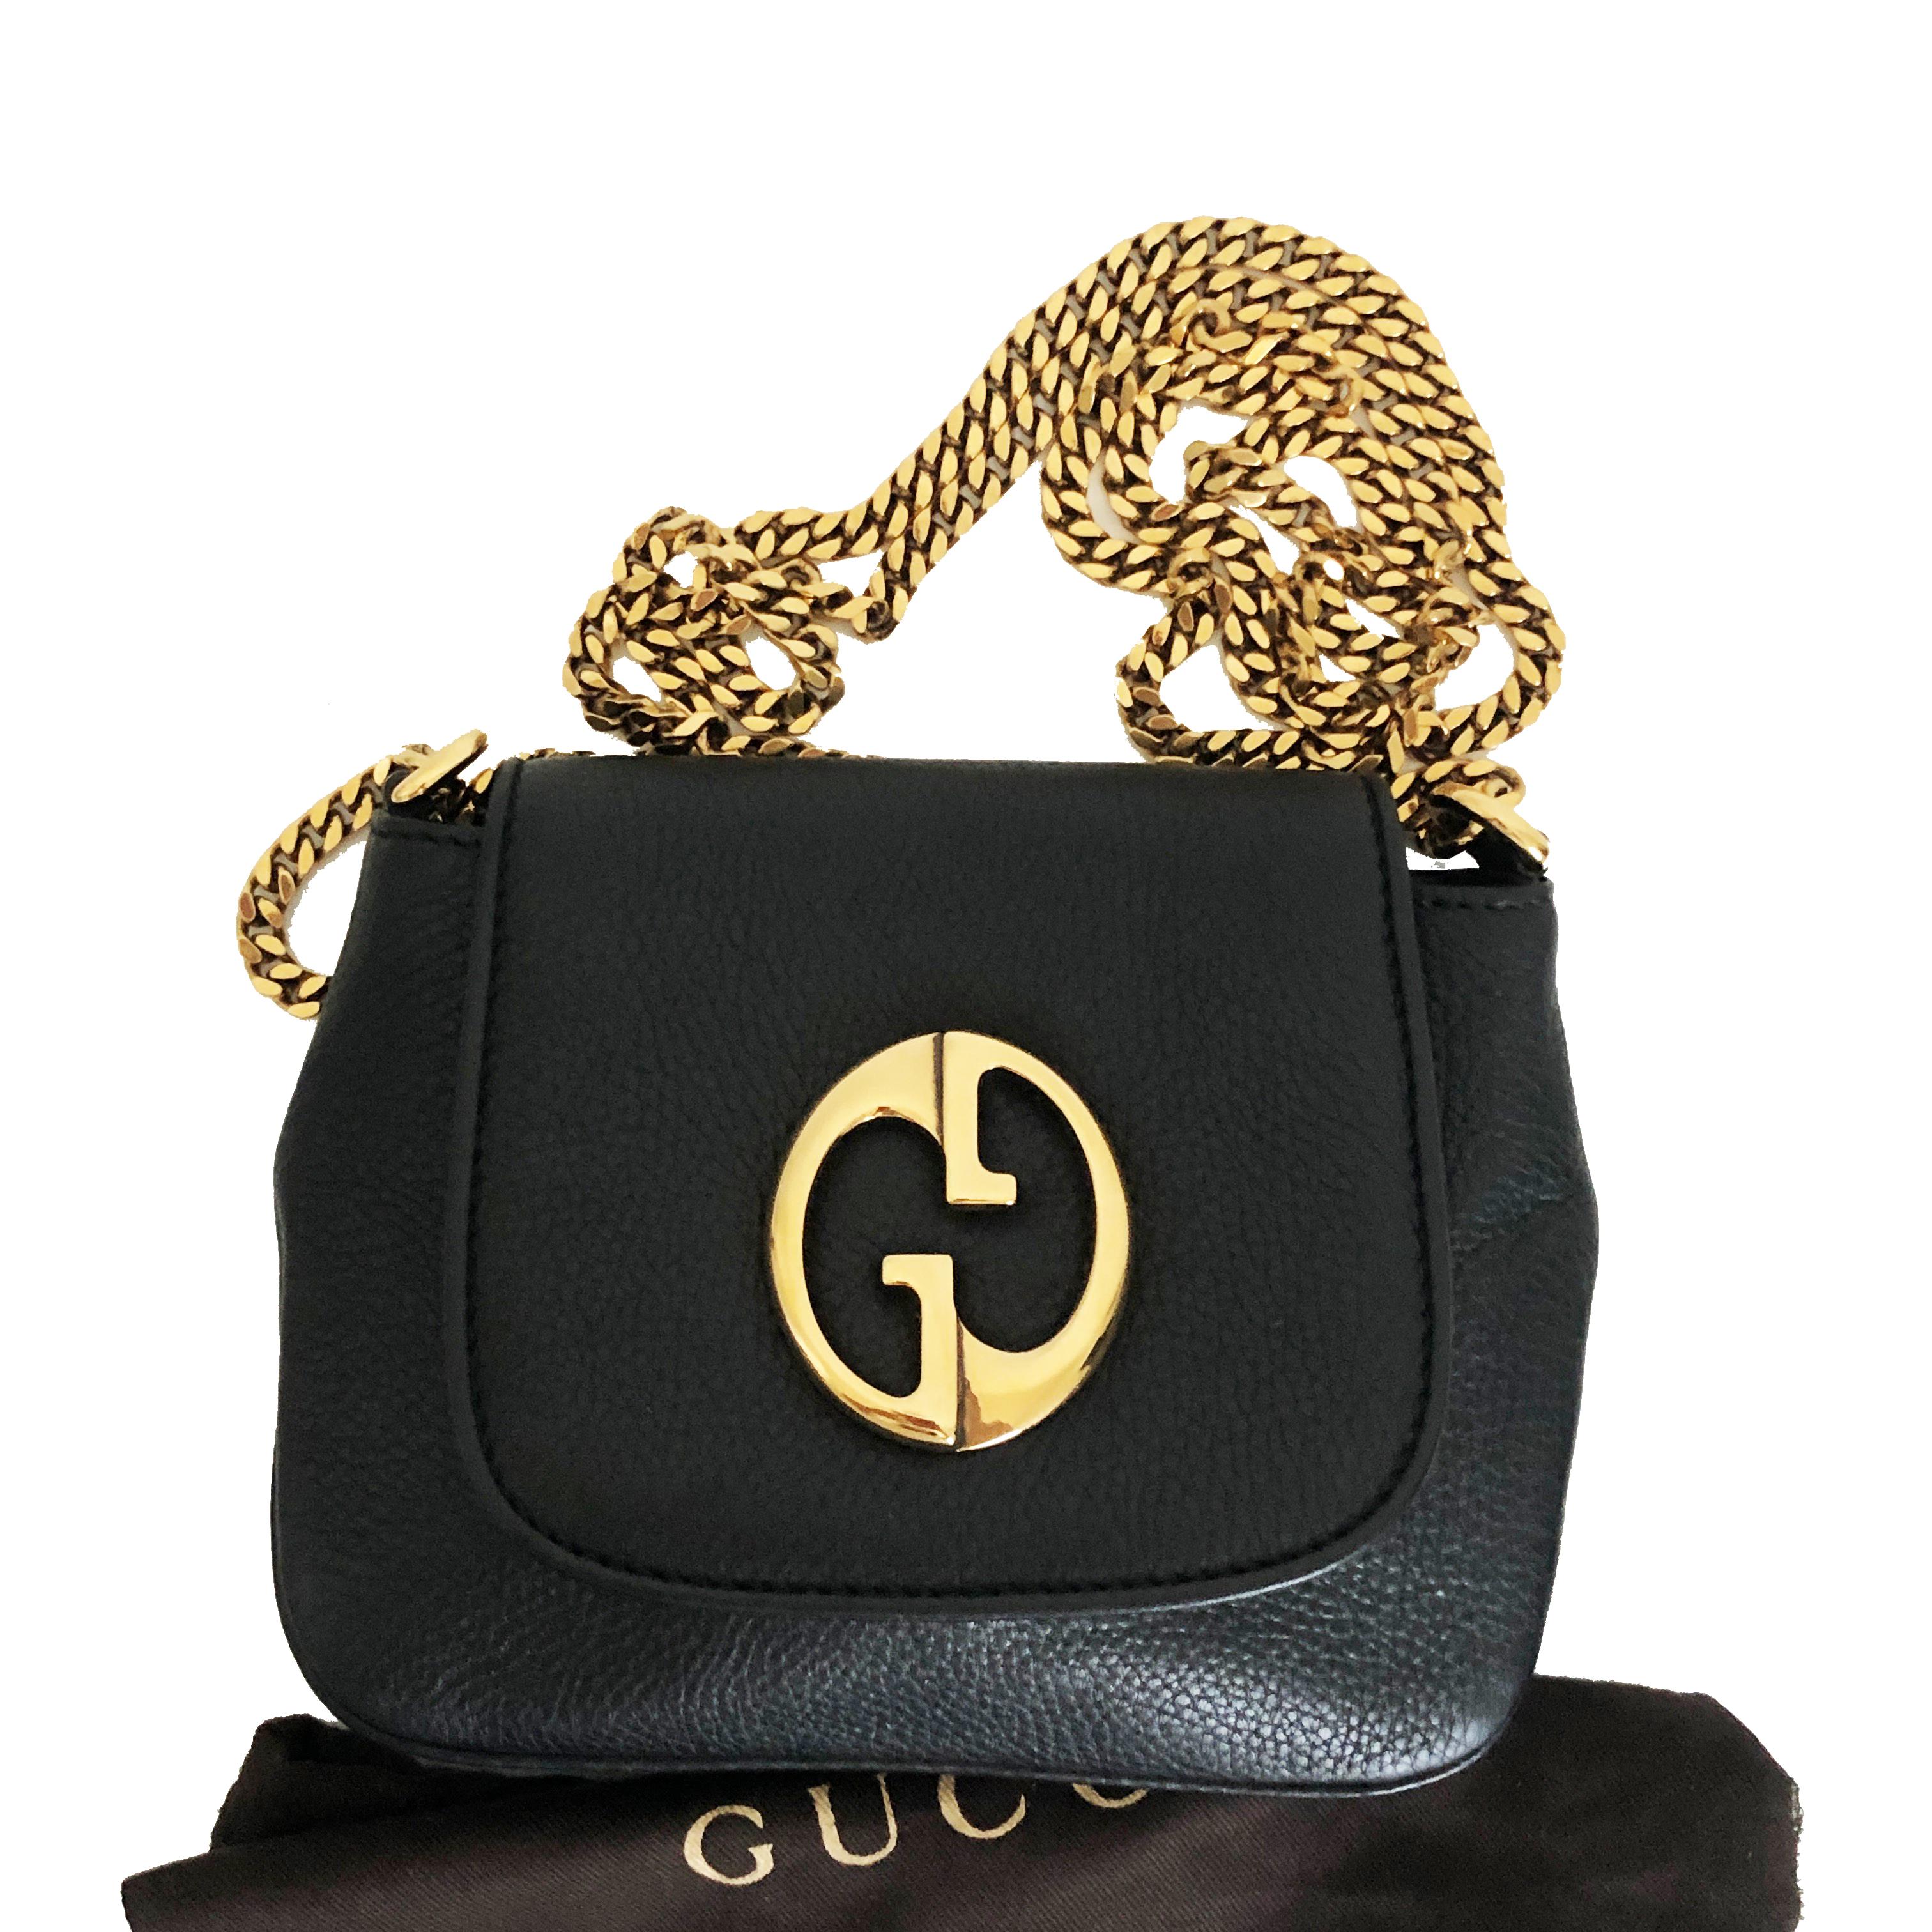 Gucci 1973 Shoulder Bag Black Pebbled Leather Messenger Bag NWOT 4